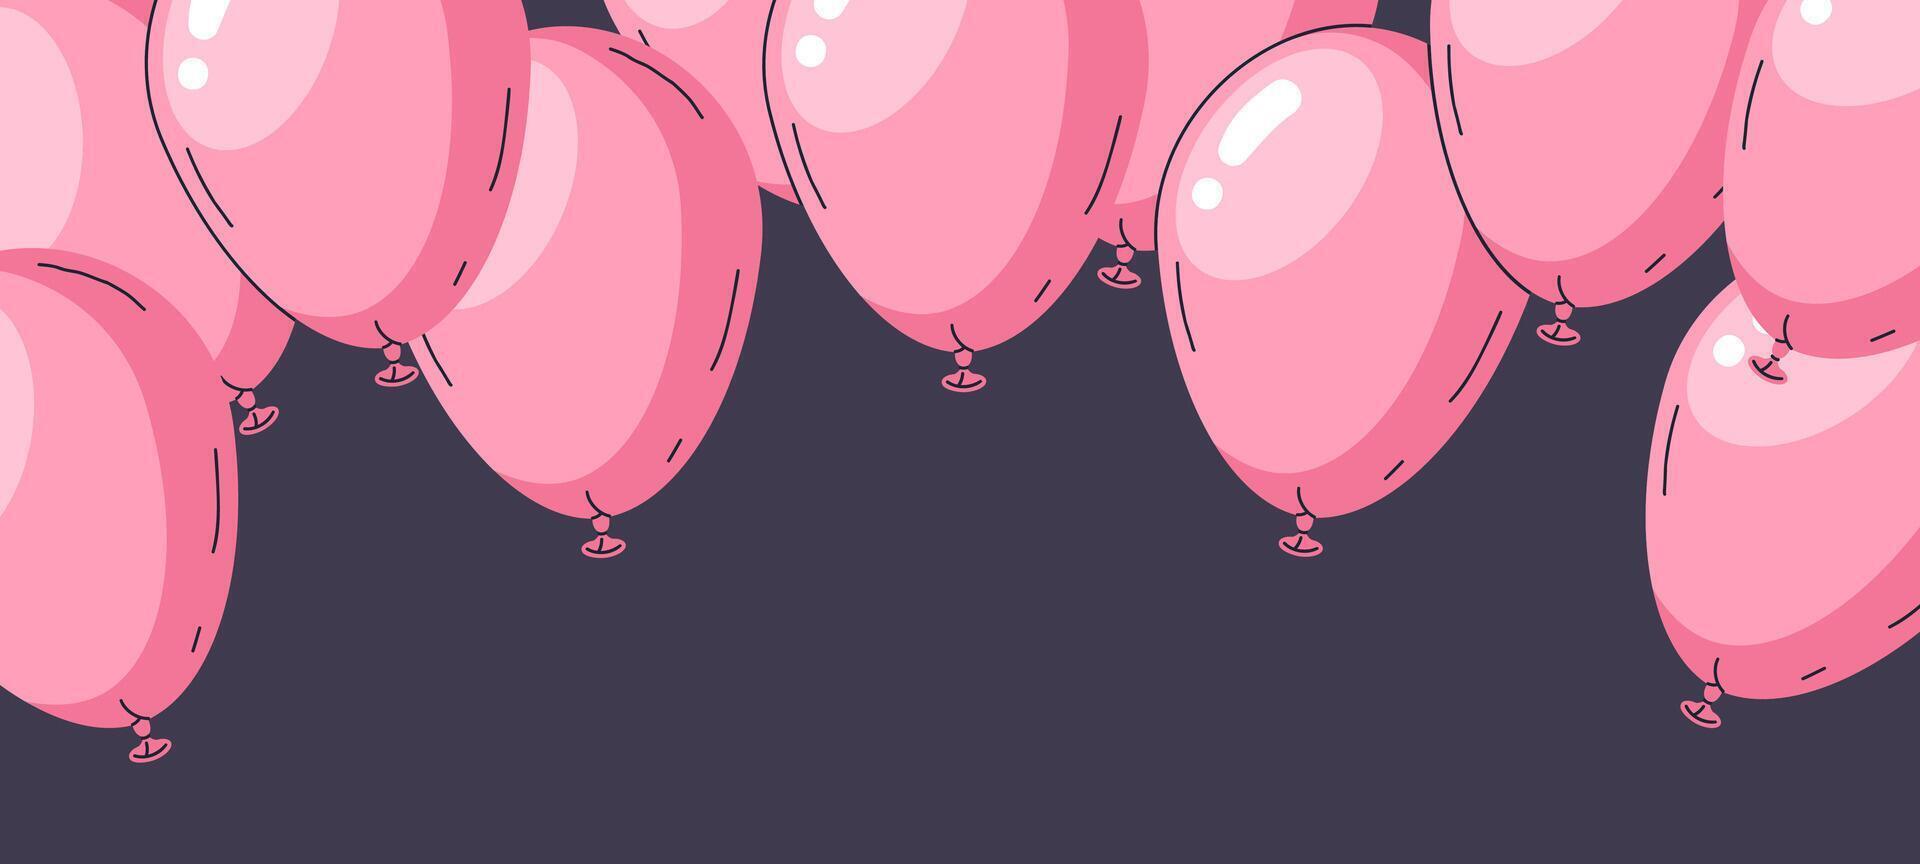 Rosa Luftballons Hintergrund. Karikatur glänzend Rosa Luftballons Geburtstag Party Dekor, Ferien Luft Ballon Dekorationen eben Hintergrund Illustration. Hand gezeichnet Helium Luftballons Design vektor